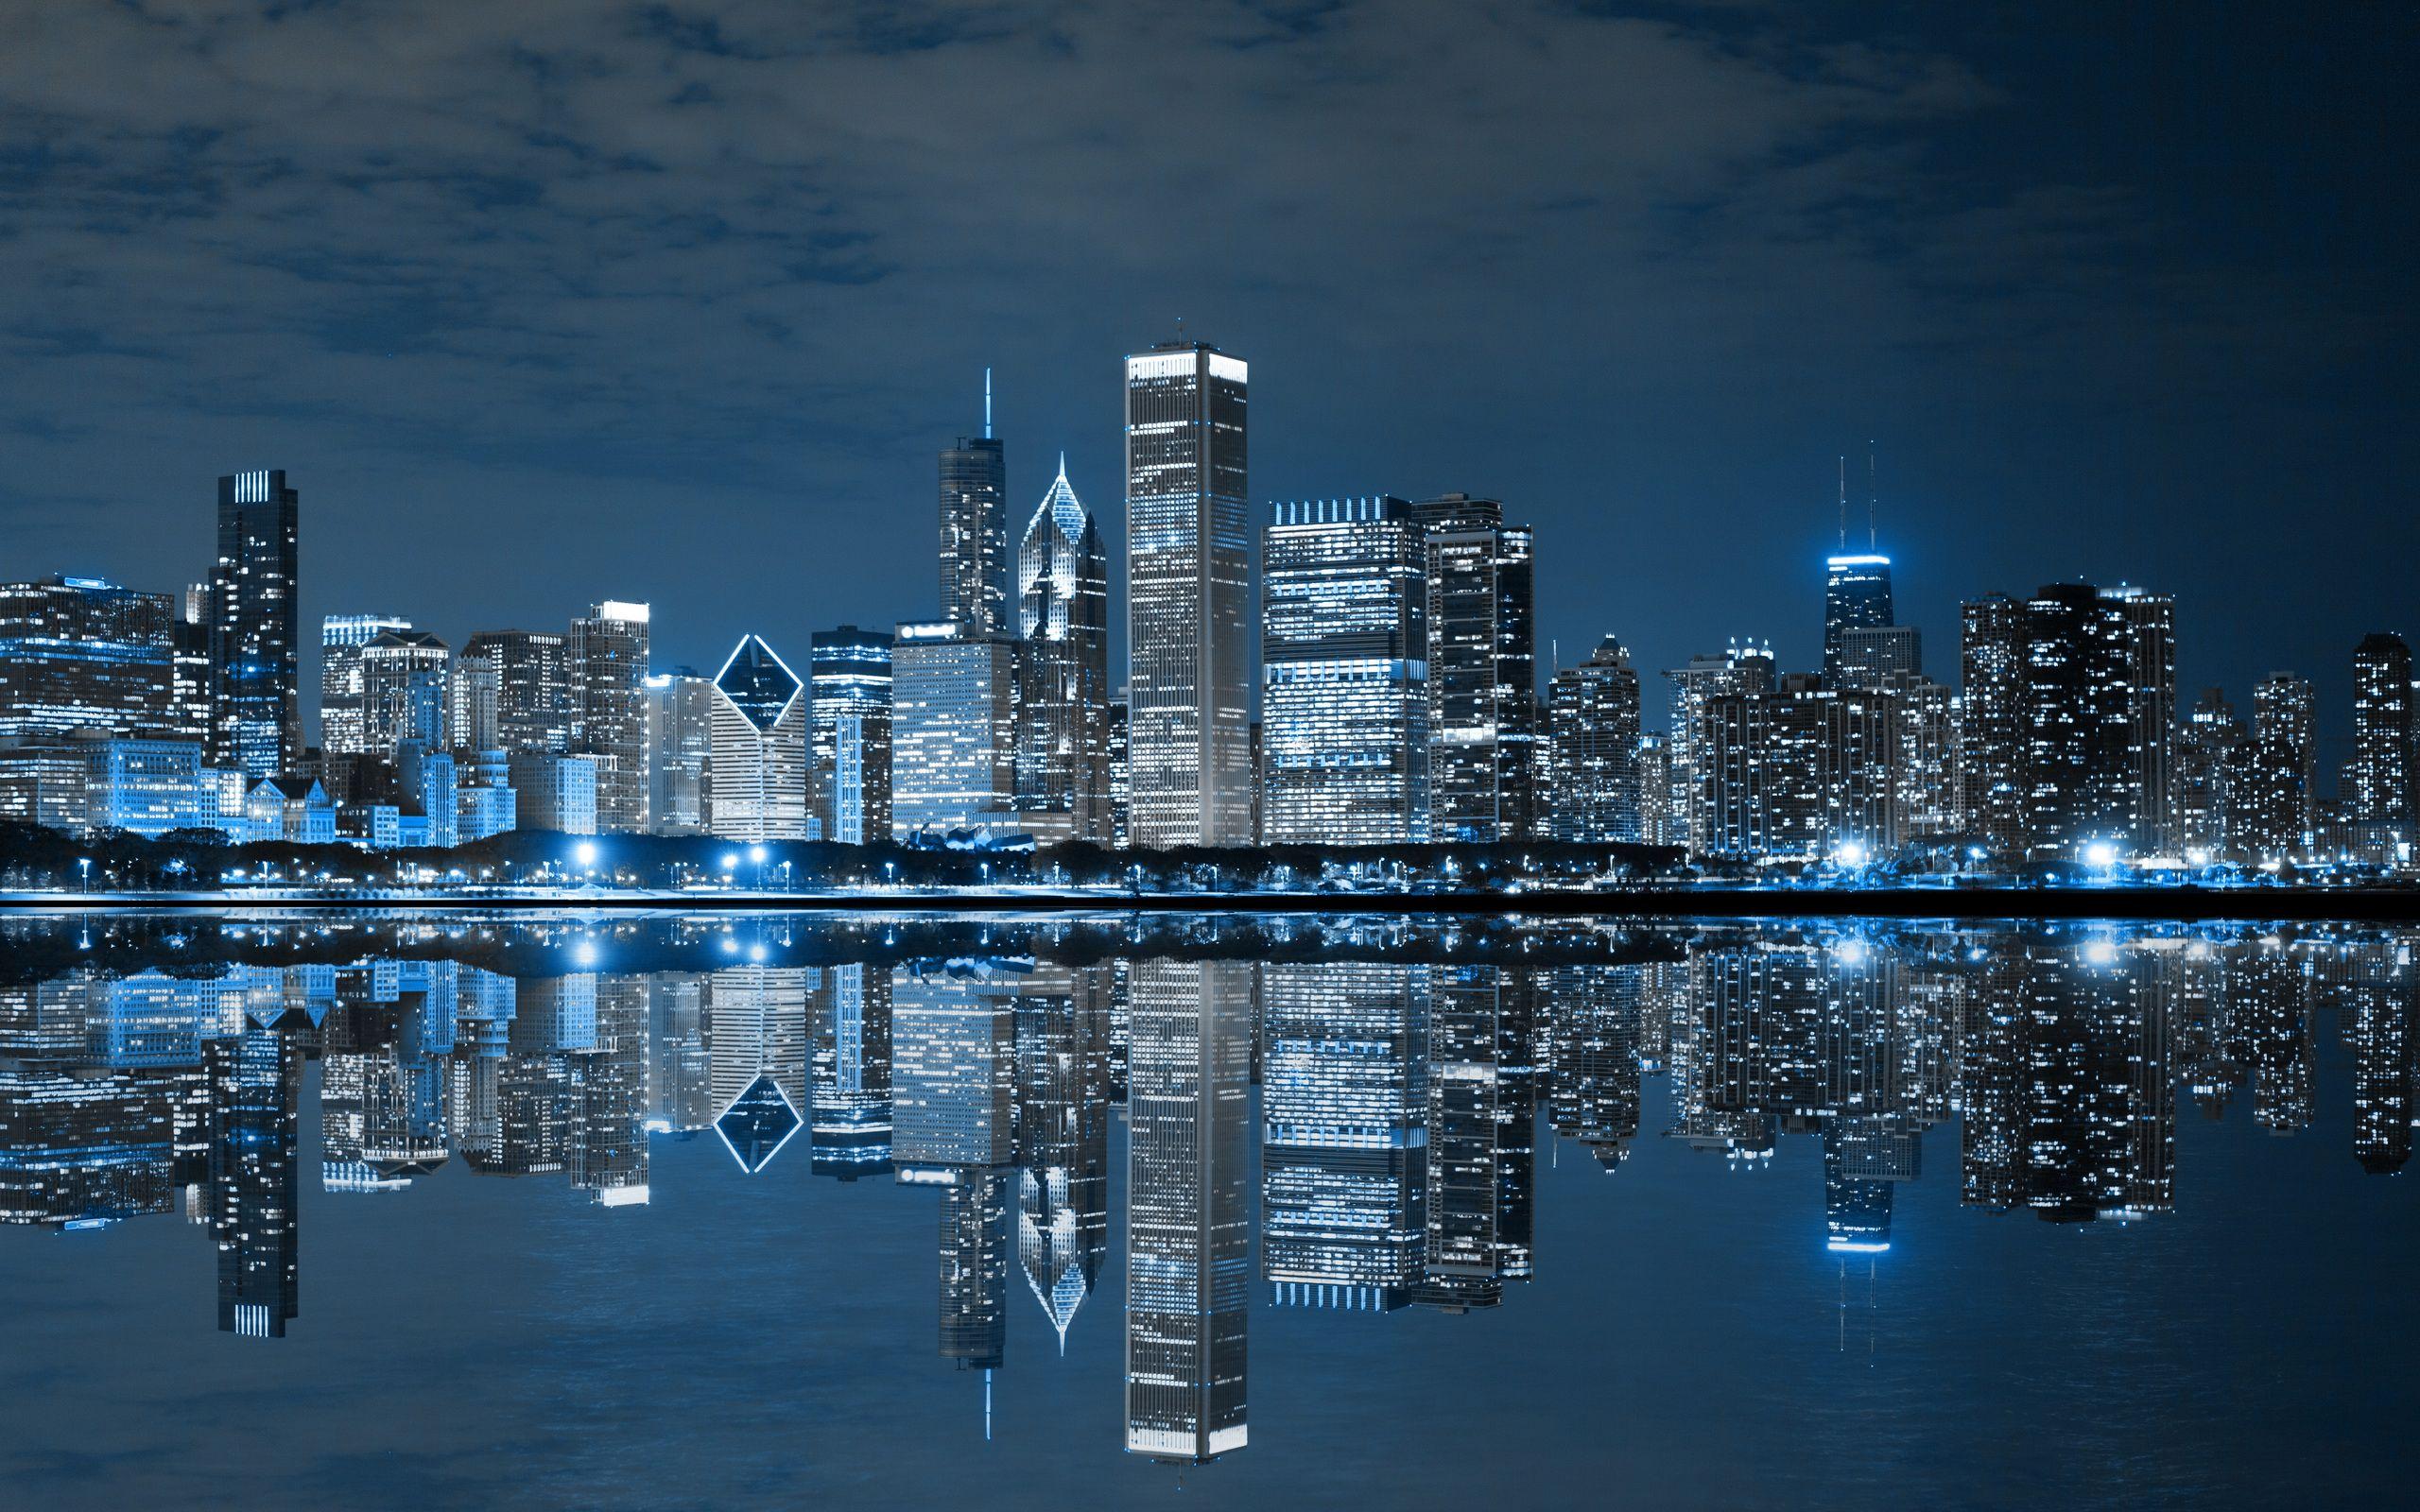 Hình nền Chicago Skyline đẹp nổi bật: Những bức ảnh hình nền thể hiện vẻ đẹp của thành phố Chicago với khung cảnh đầy ấn tượng và nổi bật sẽ khiến ai nhìn thoáng qua cũng phải trầm trồ. Nếu bạn muốn trang trí màn hình của mình bằng những bức ảnh đẹp, thì hình nền Chicago Skyline chính là lựa chọn hoàn hảo cho bạn.